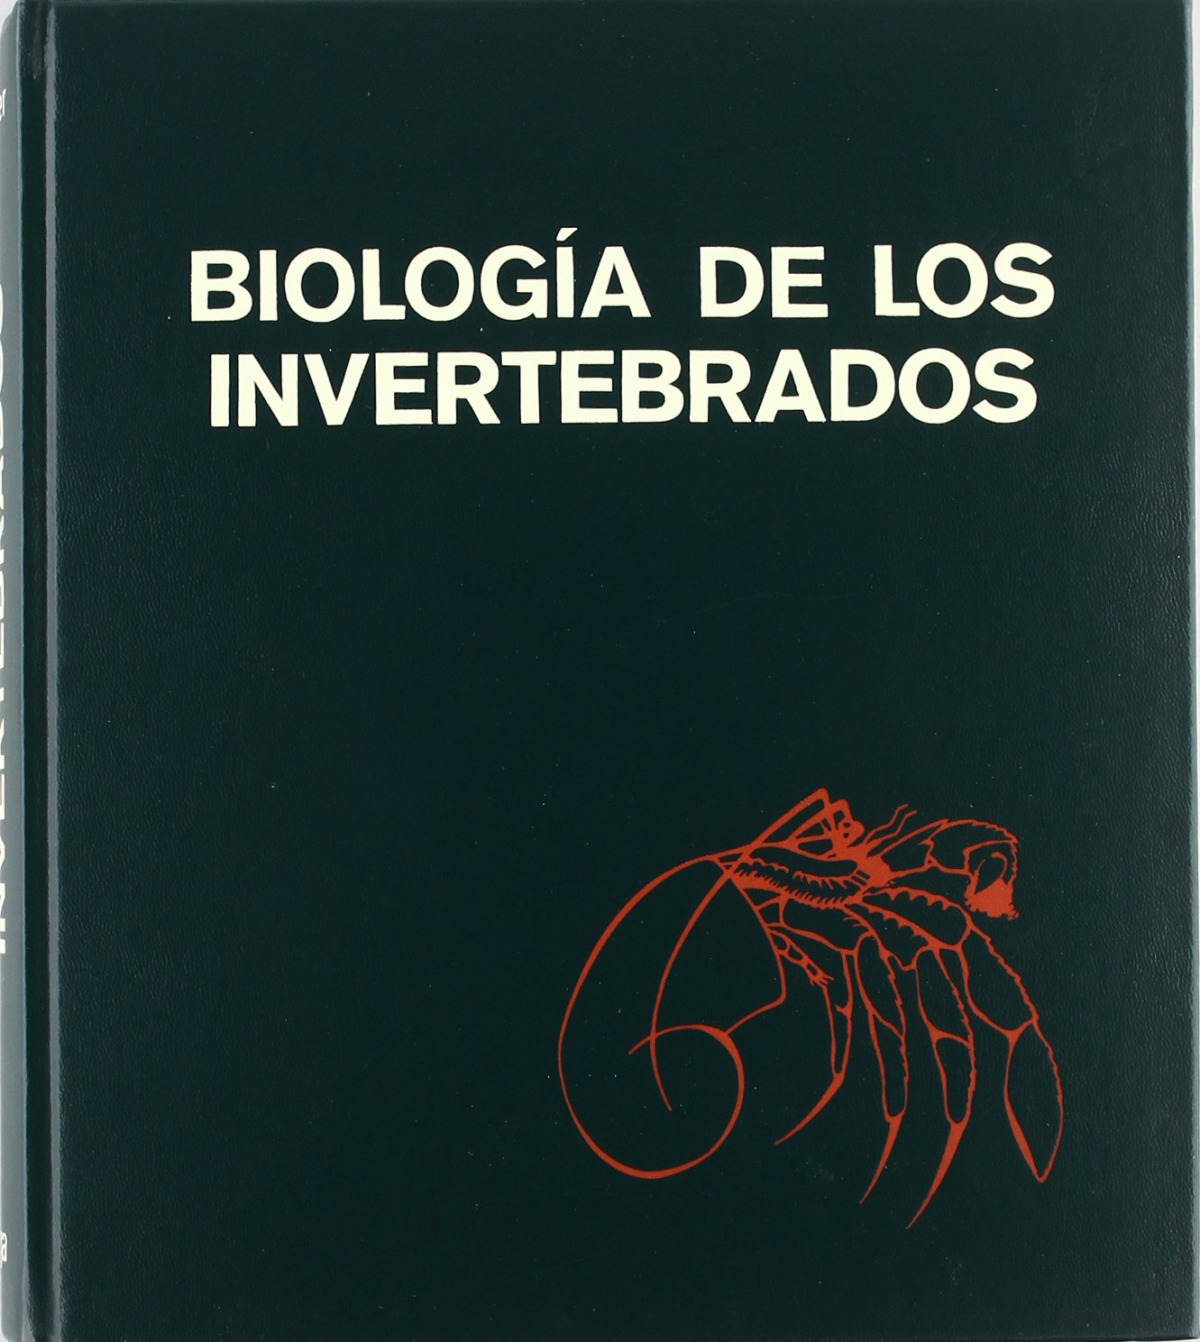 Biologia de los invertebrados - Gardiner, Mary S.